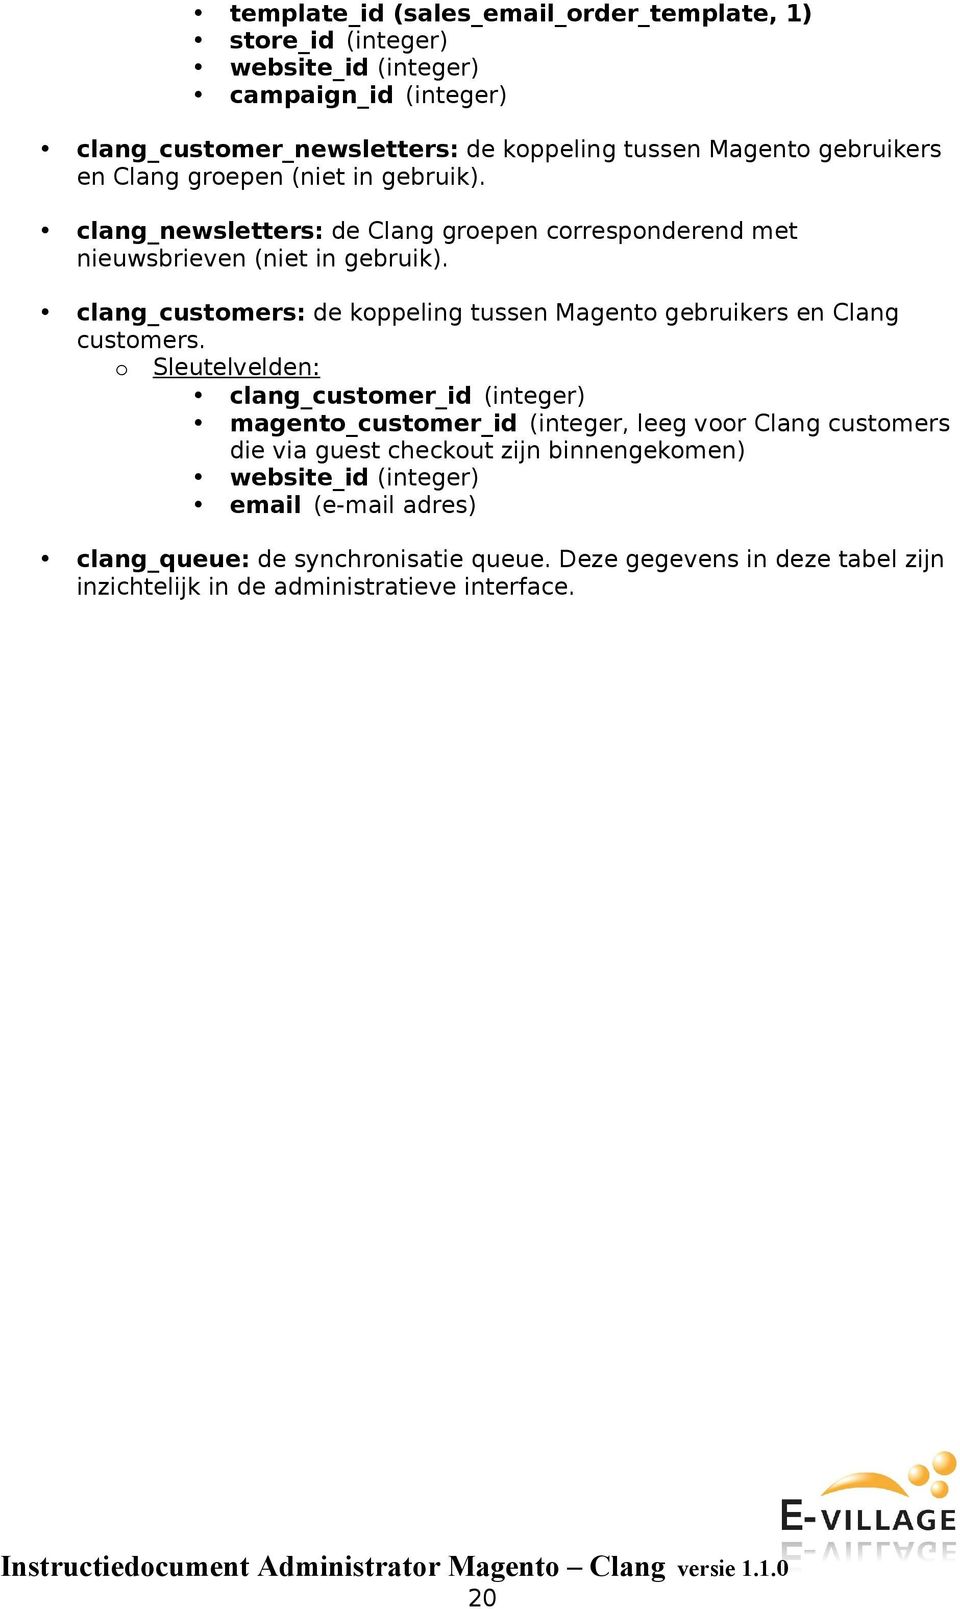 clang_customers: de koppeling tussen Magento gebruikers en Clang customers.